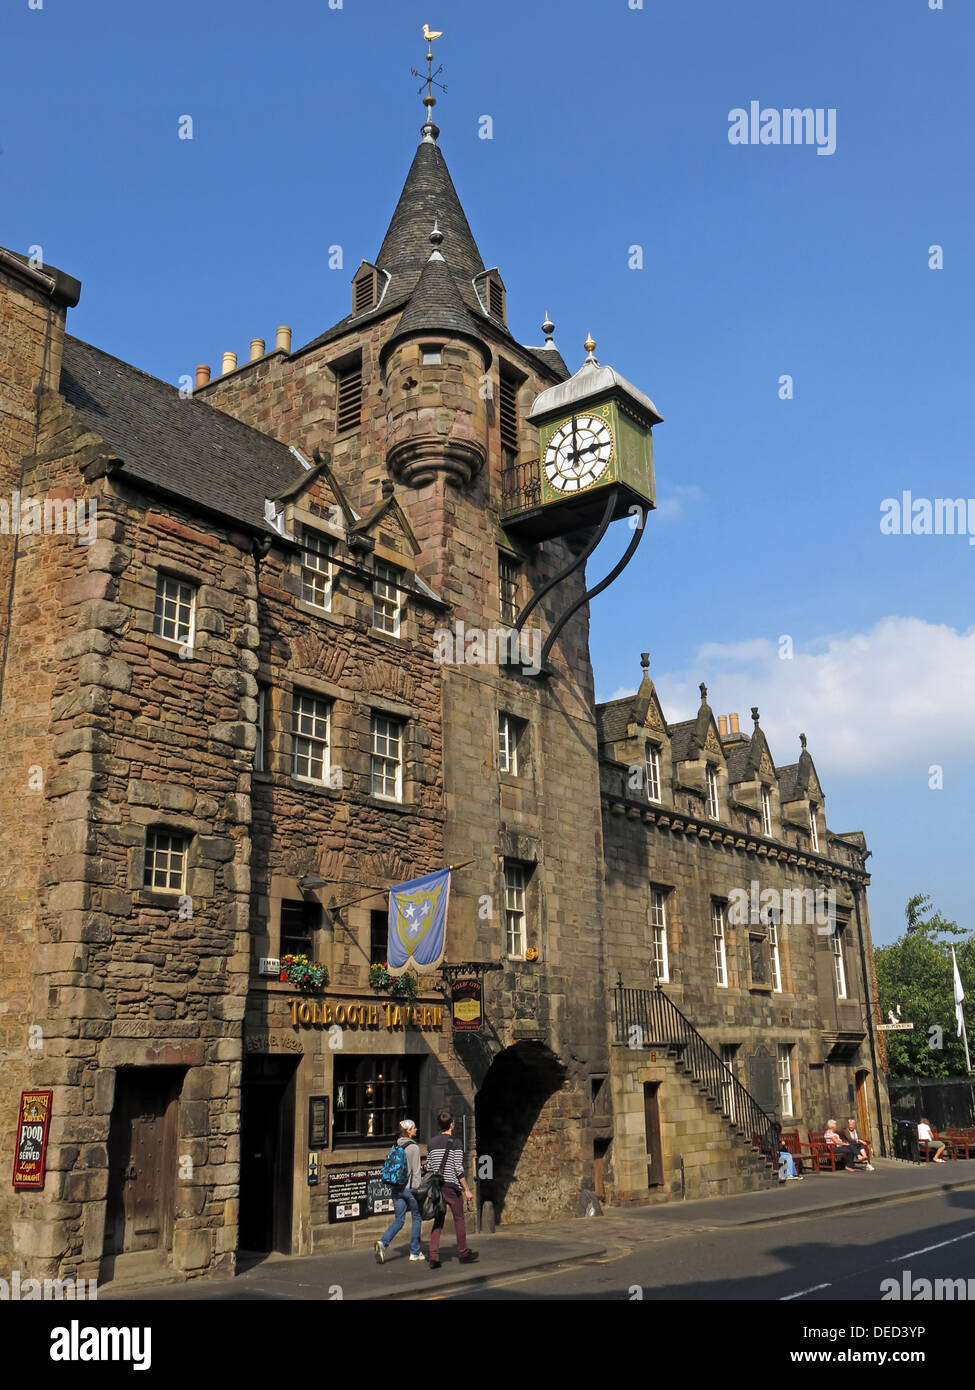 Ripresa in grandangolo Edinburgh Tolbooth Tavern orologio Royal Mile Scozia Scotland Foto Stock